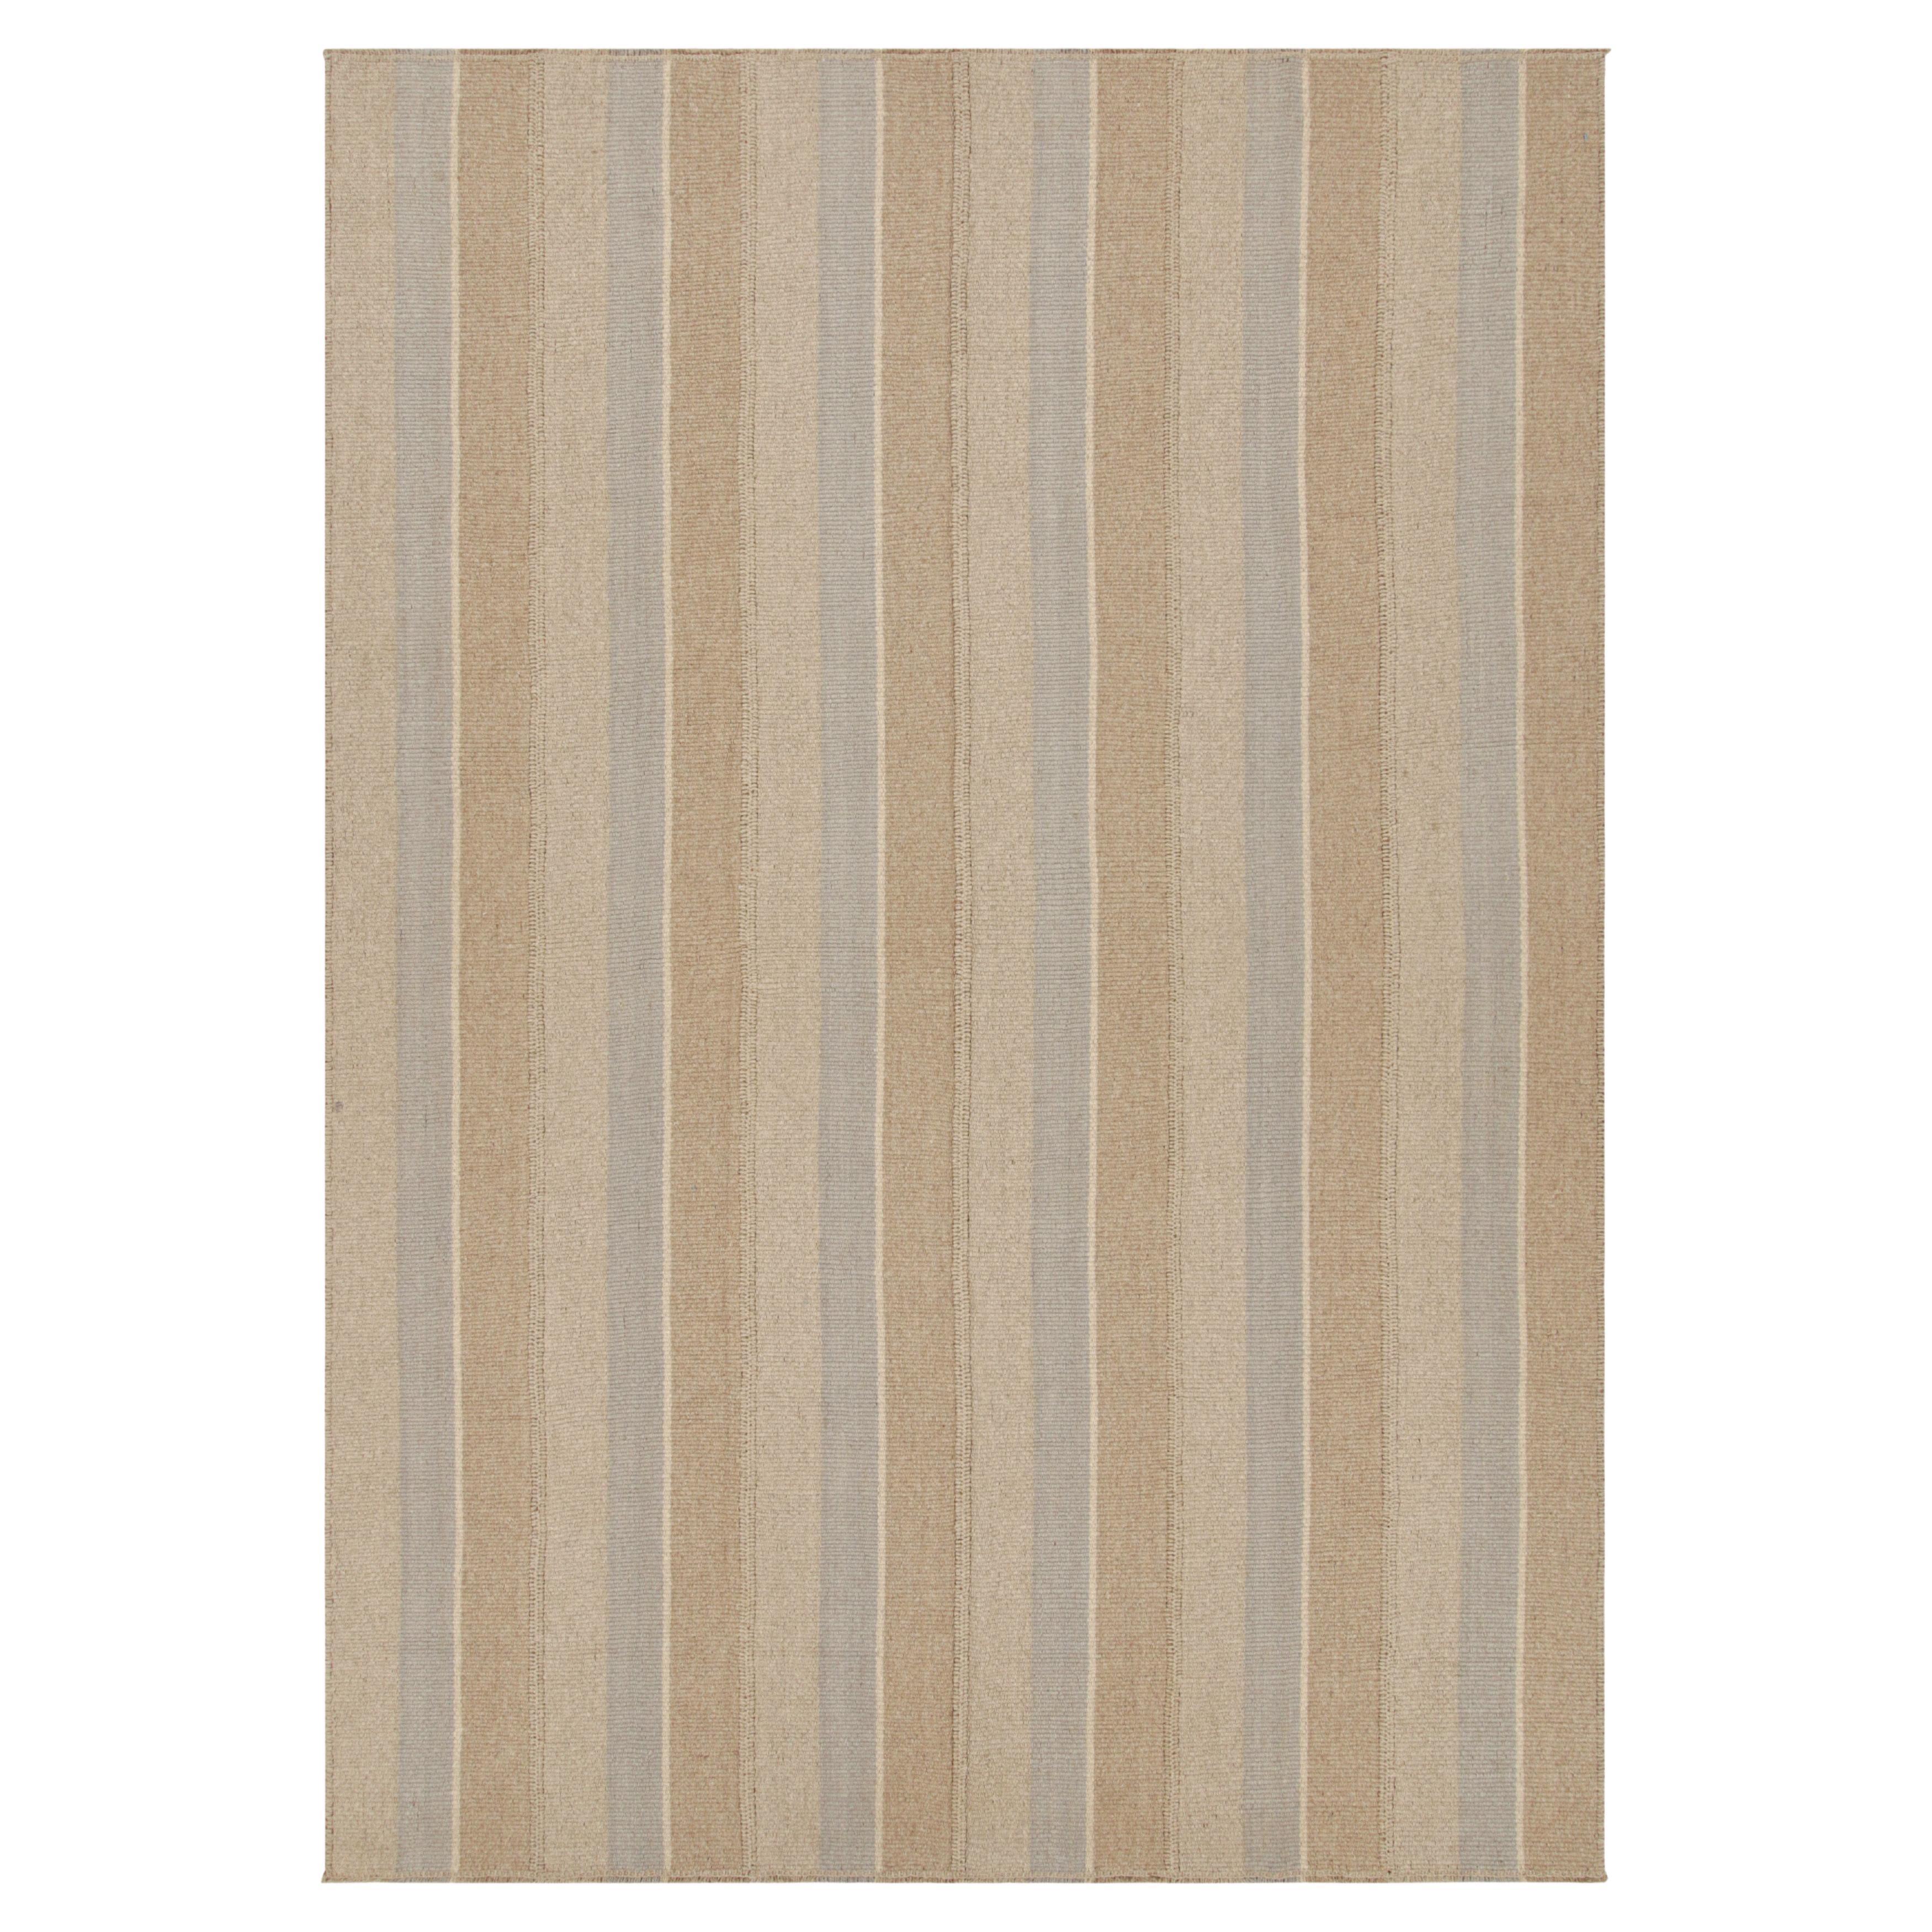 Rug & Kilim's Contemporary Kilim in Gray and Beige-Brown Textural Stripes (Kilim contemporain à rayures texturées gris et beige-brun) 